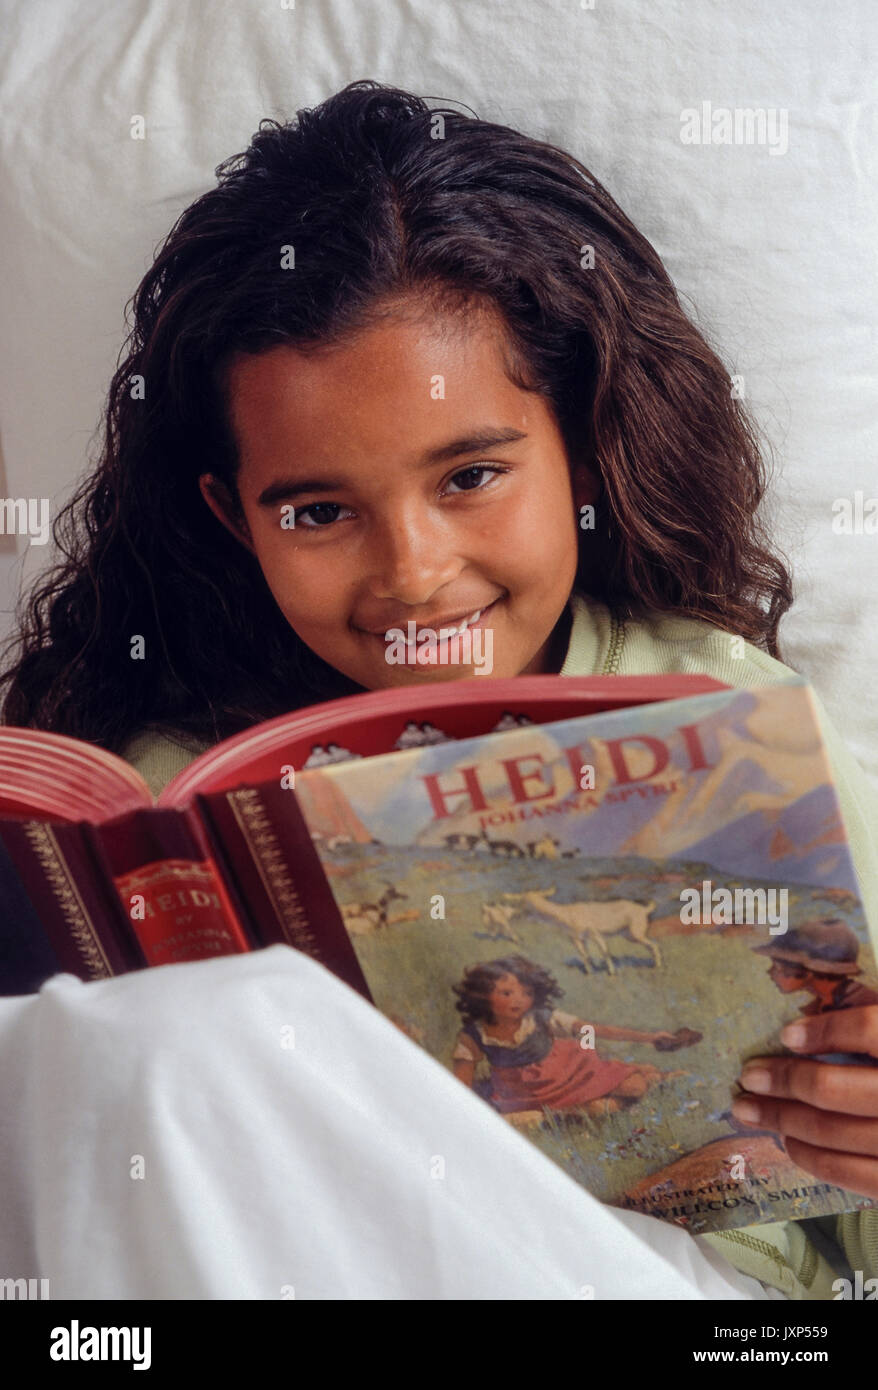 Niña 7-9 años con expresión sincera leyendo libros de cuentos clásicos 'Heidi' en la cama busca abrir sonrisa de bienvenida. /Caucásico afroamericano Foto de stock